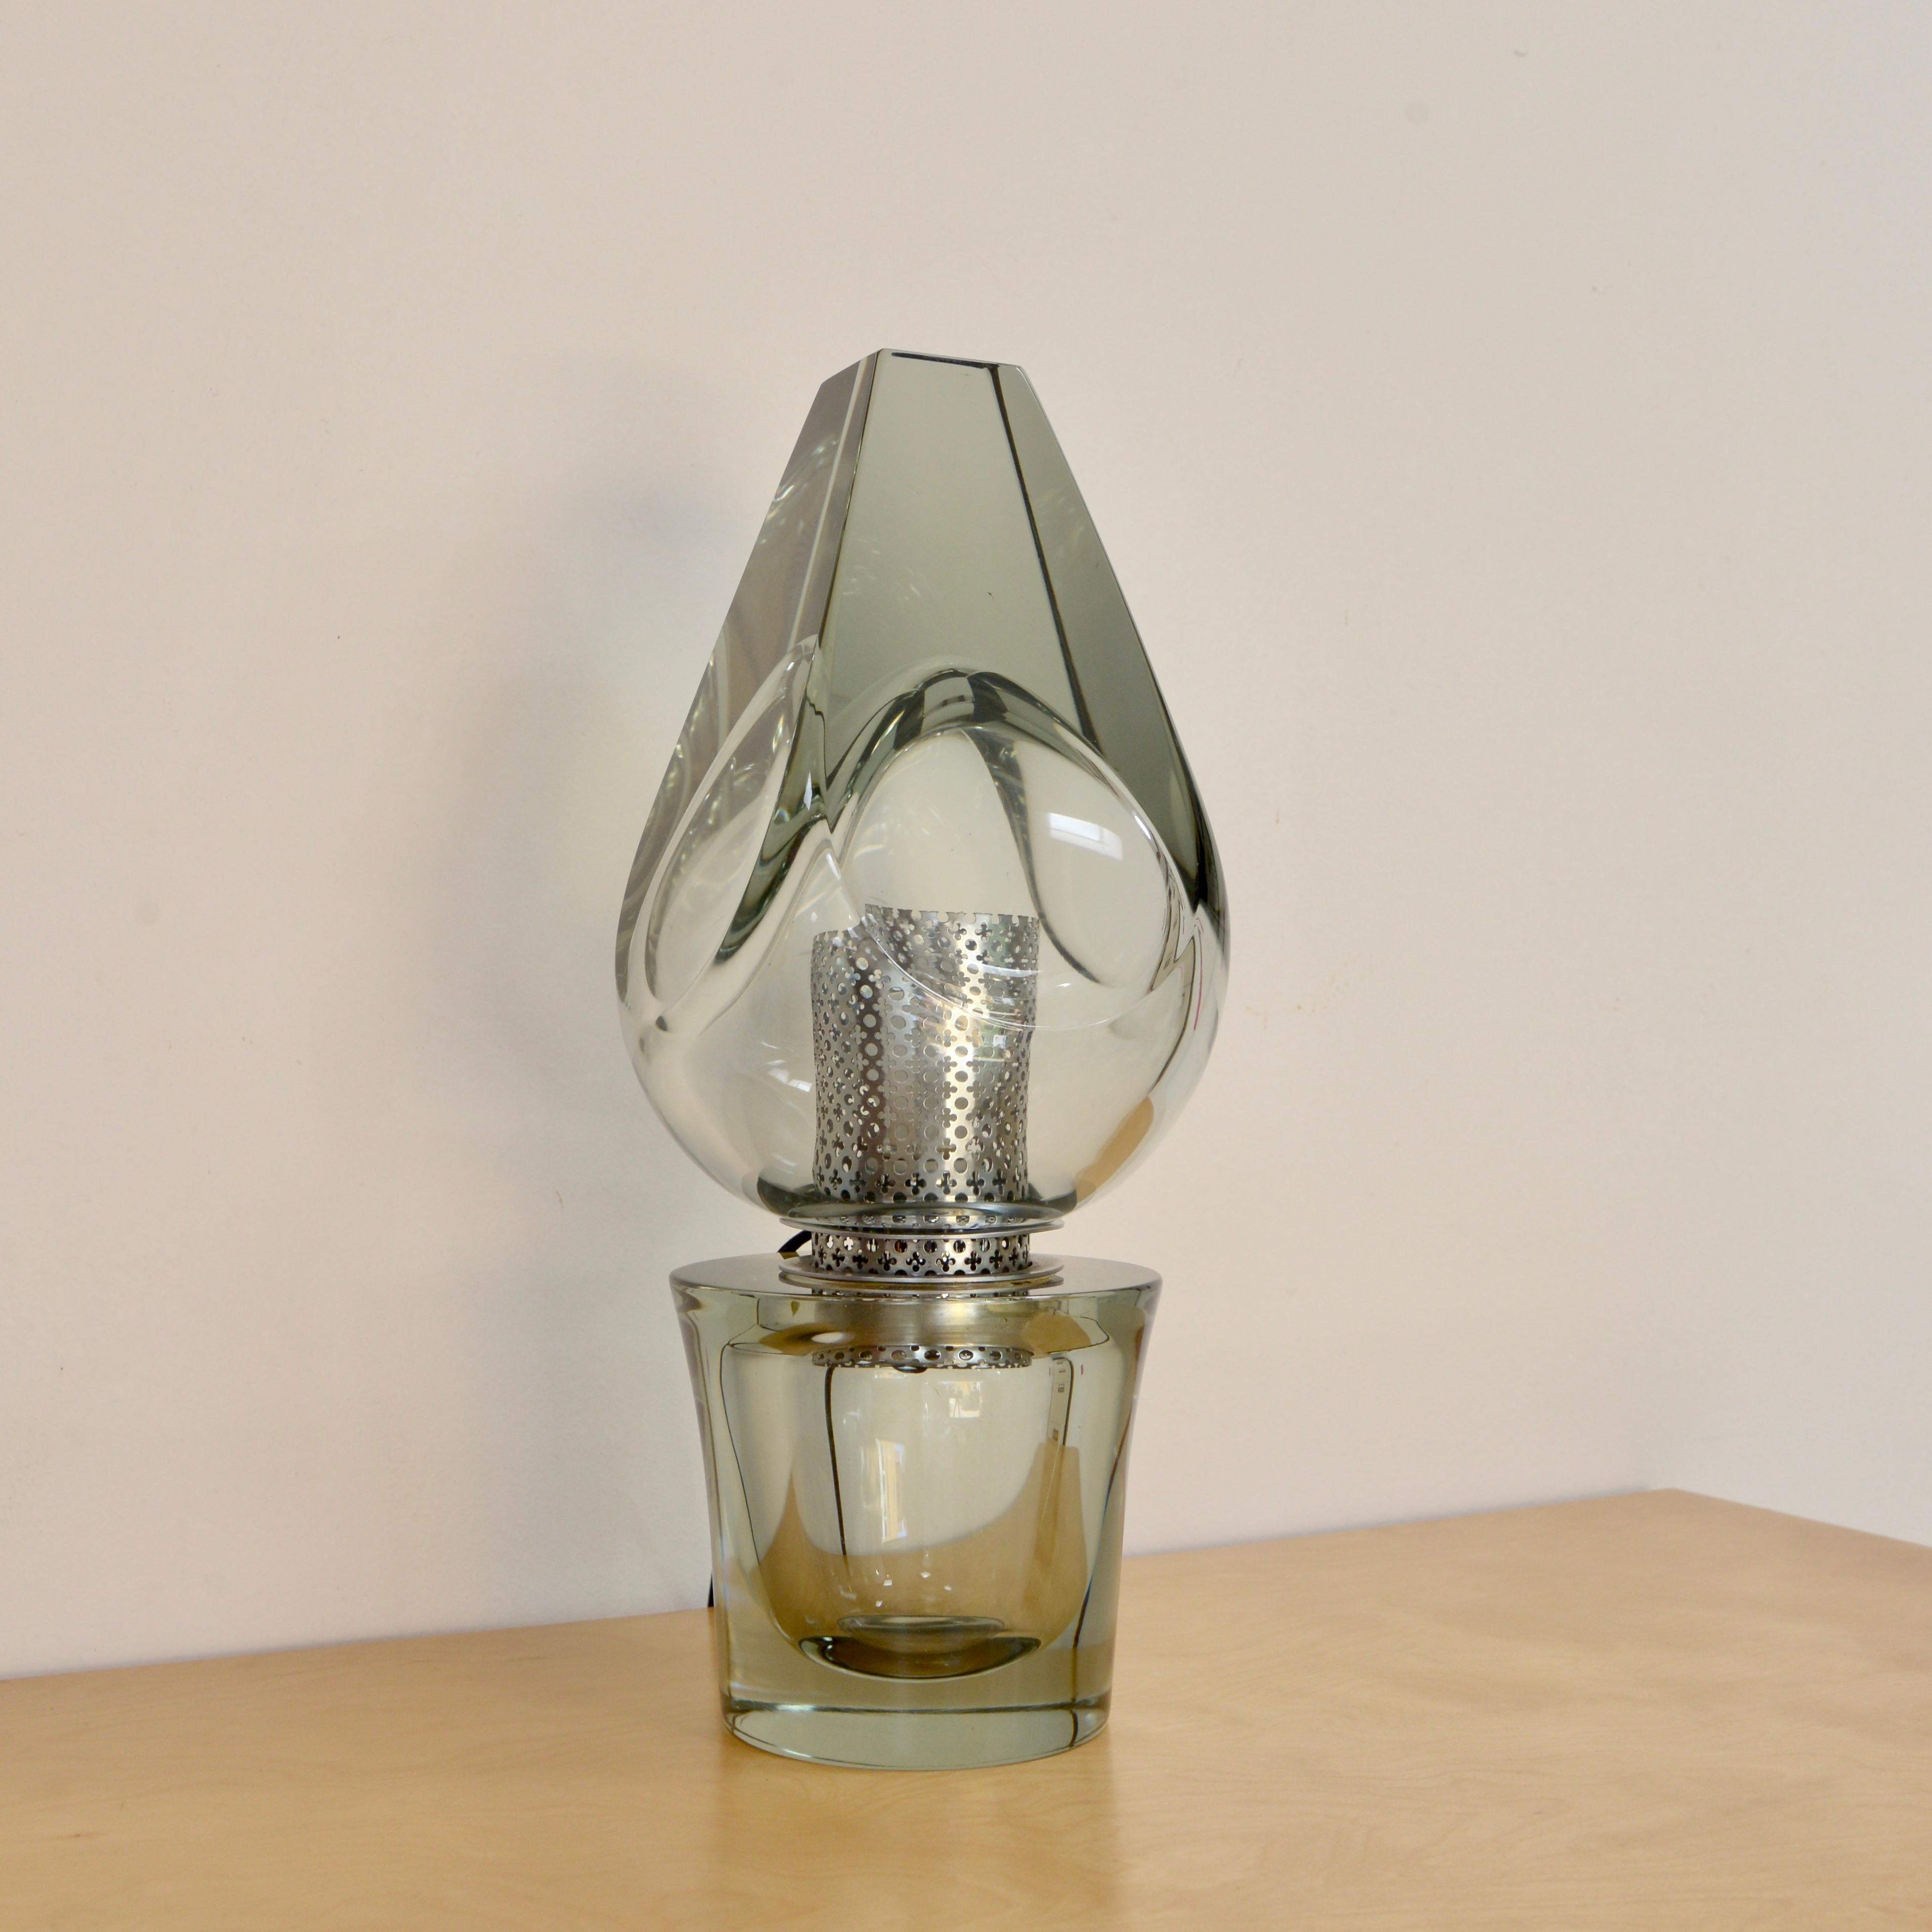 Élégante lampe de table italienne Seguso en verre de cristal de Murano, datant des années 1970. Quincaillerie perforée en laiton nickelé. Entièrement recâblé avec une seule douille E26 à base moyenne. Prêt à être utilisé aux États-Unis.
Mesures